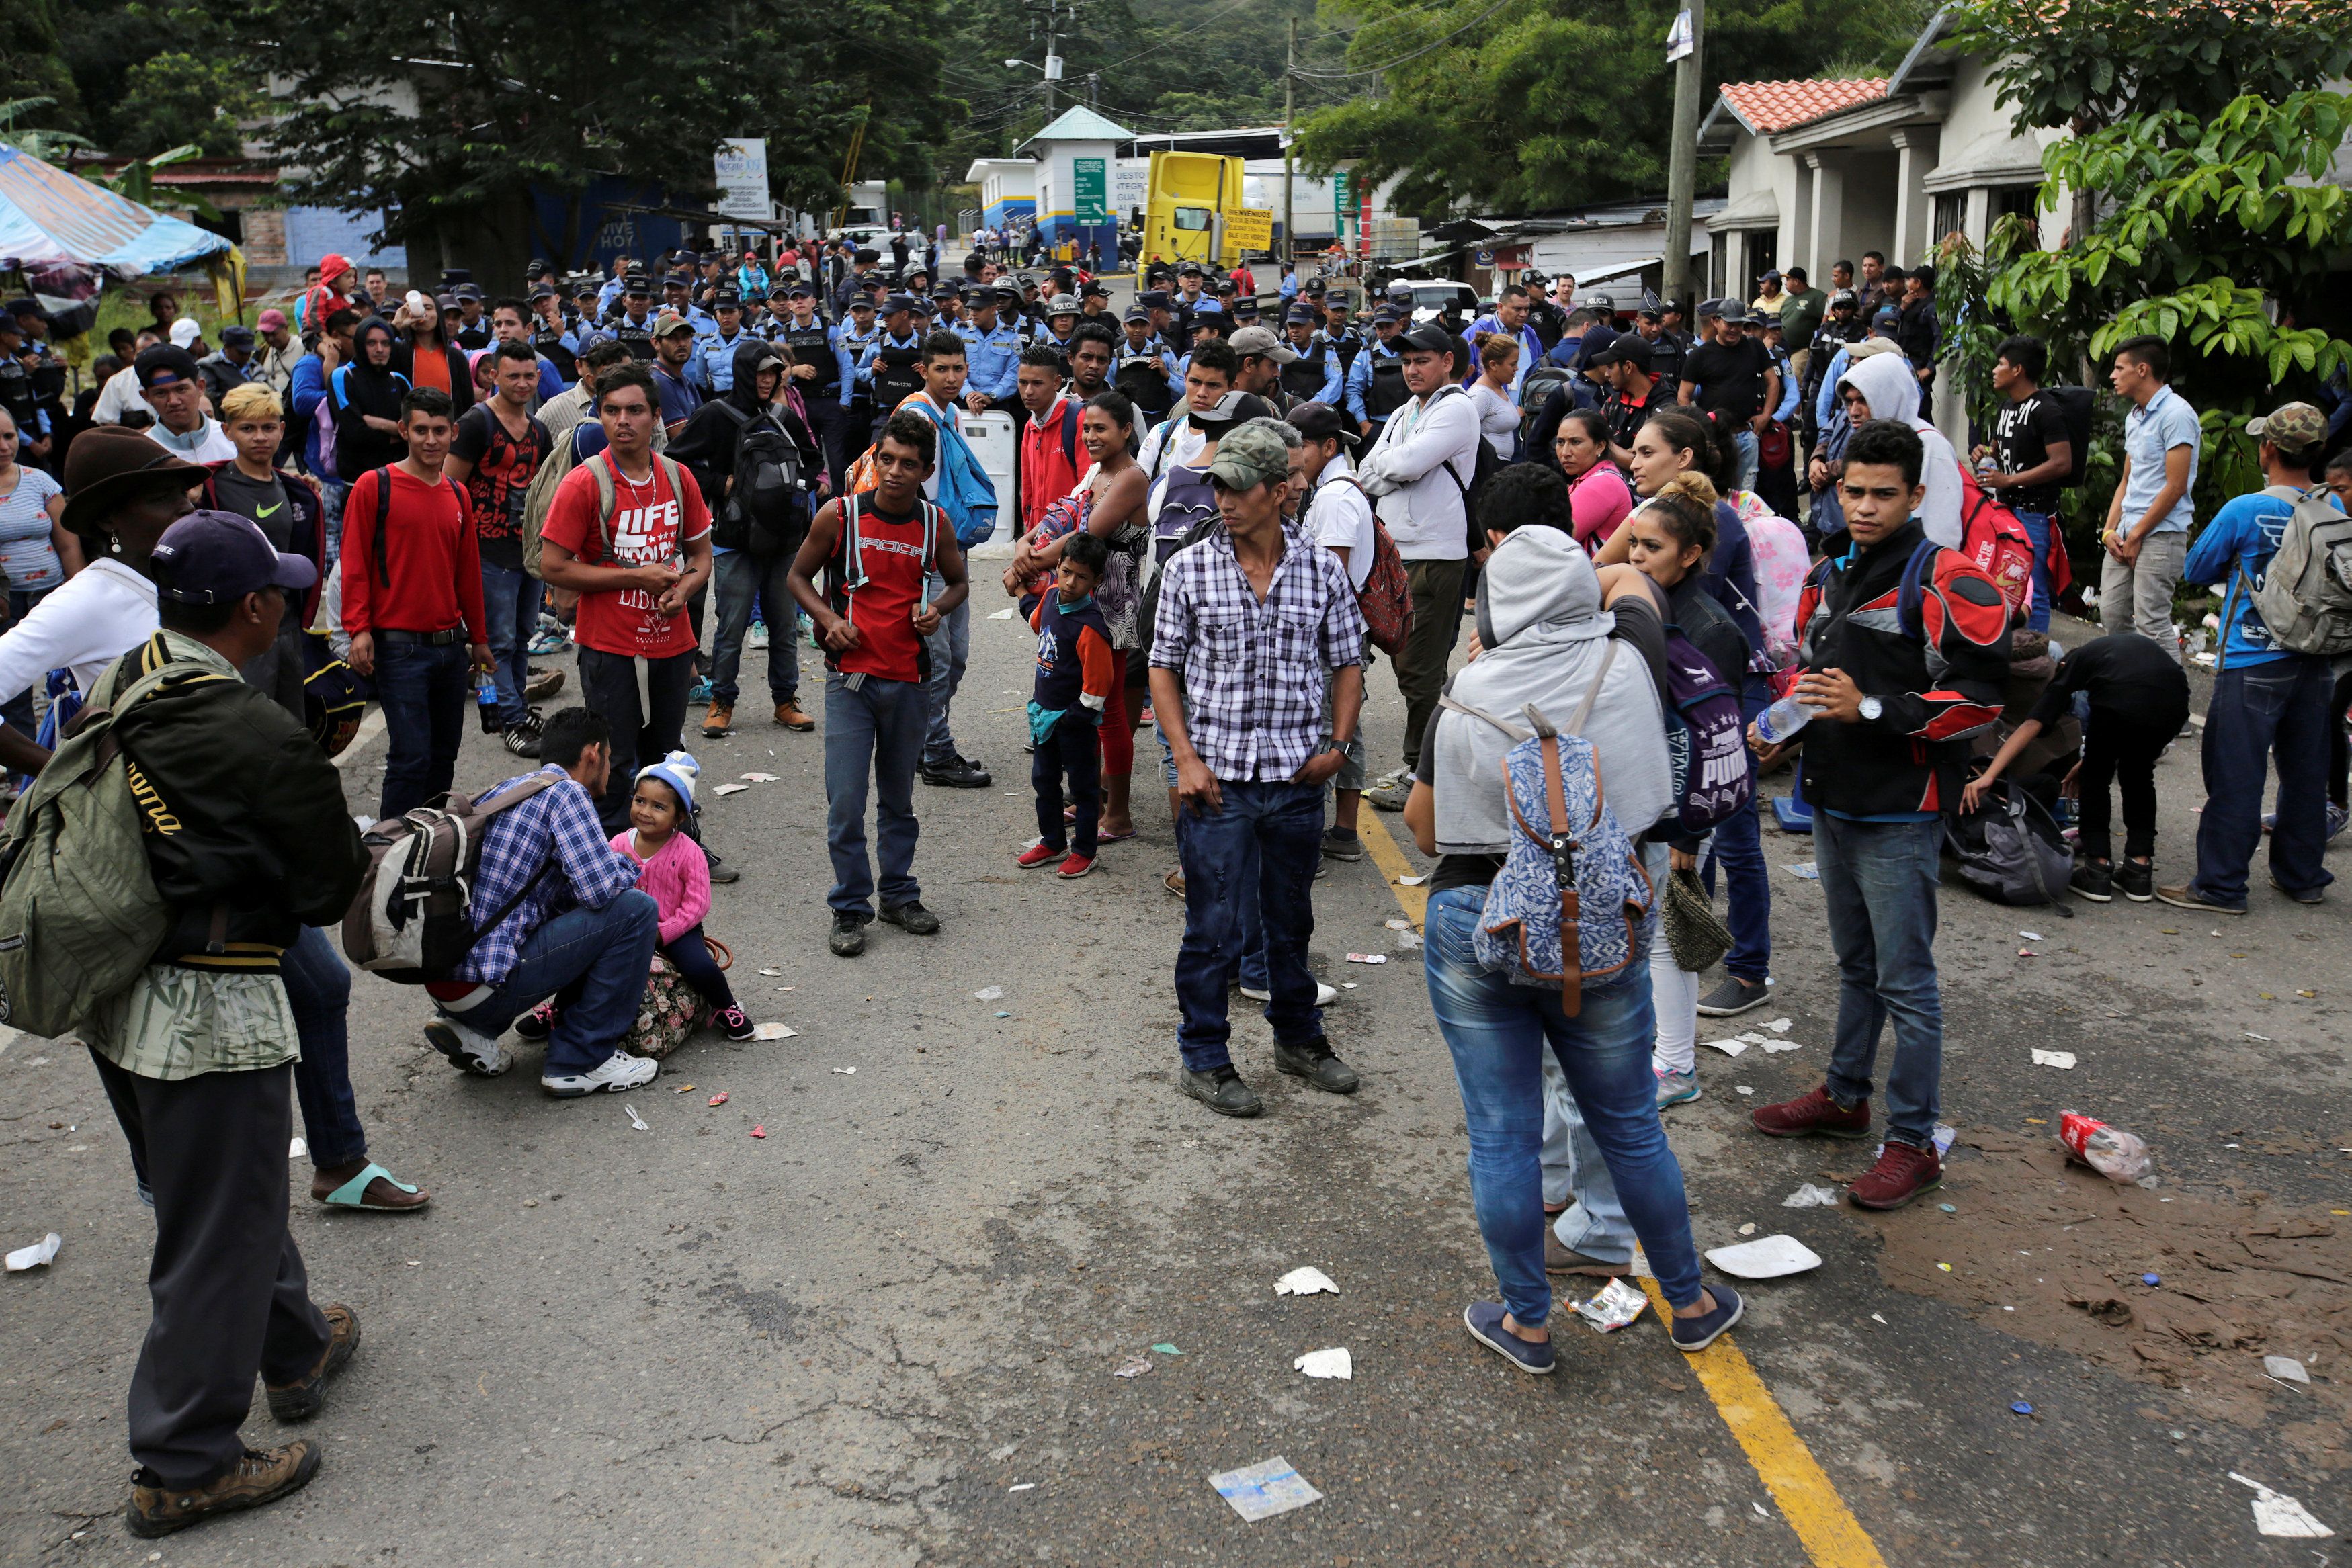 La caravana de migrantes centroamericanos decidió reiniciar su marcha luego de descansar y reagruparse en la localidad de Huixtla, Chiapas, en el sur mexicano.